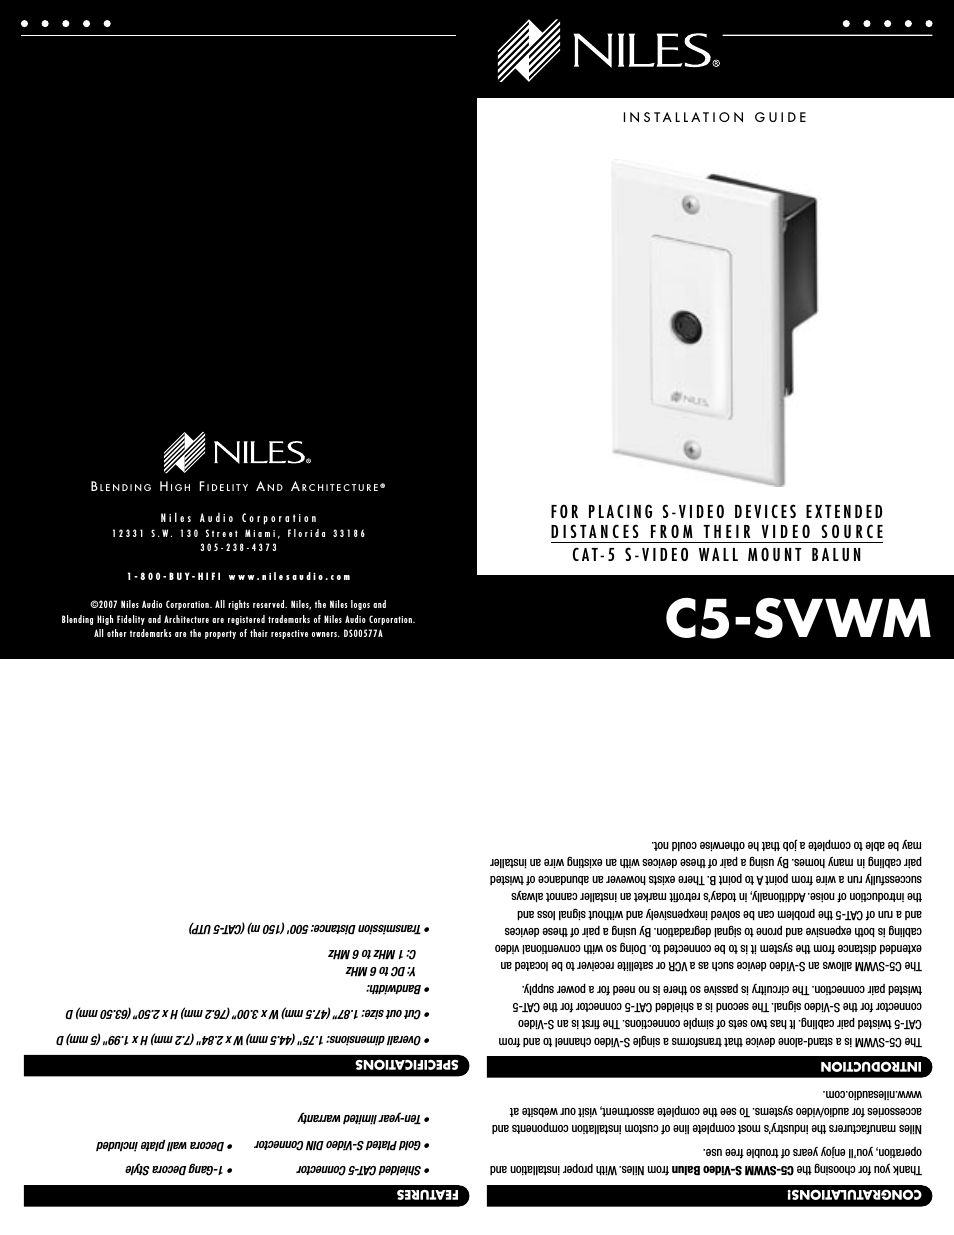 C5-SVWM